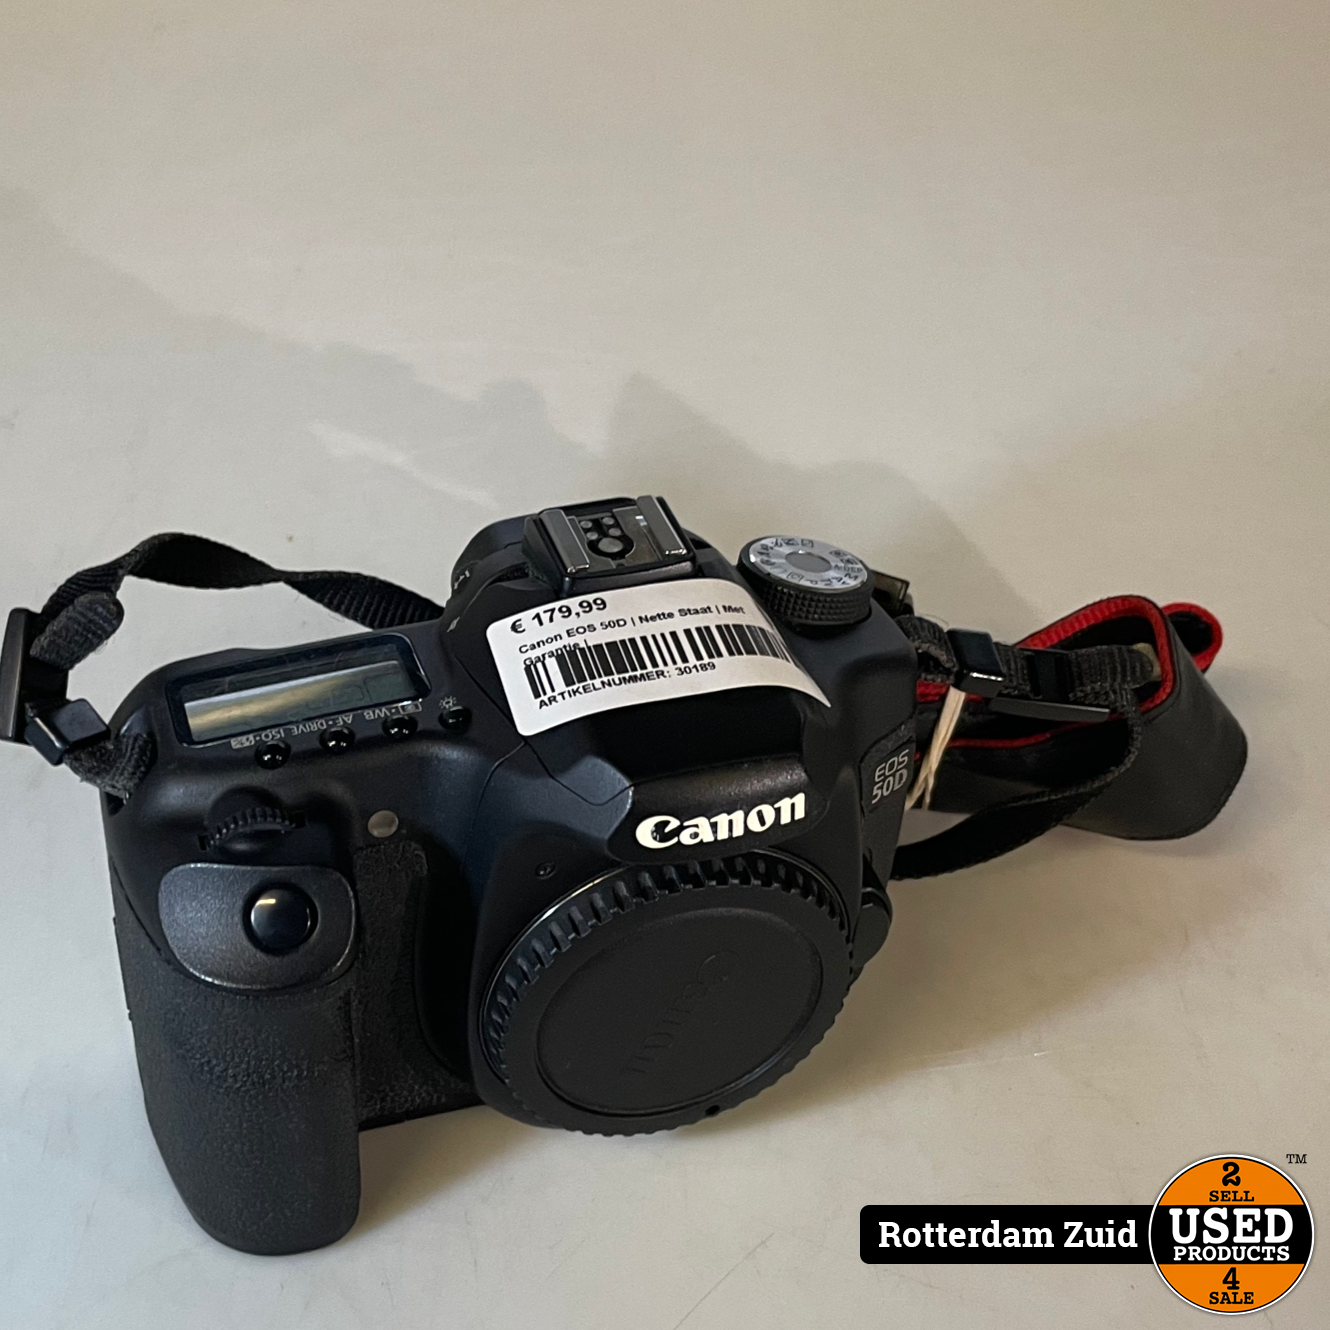 Australische persoon Scheiden fundament Canon EOS 50D | Nette Staat | Met Garantie | - Used Products Rotterdam Zuid